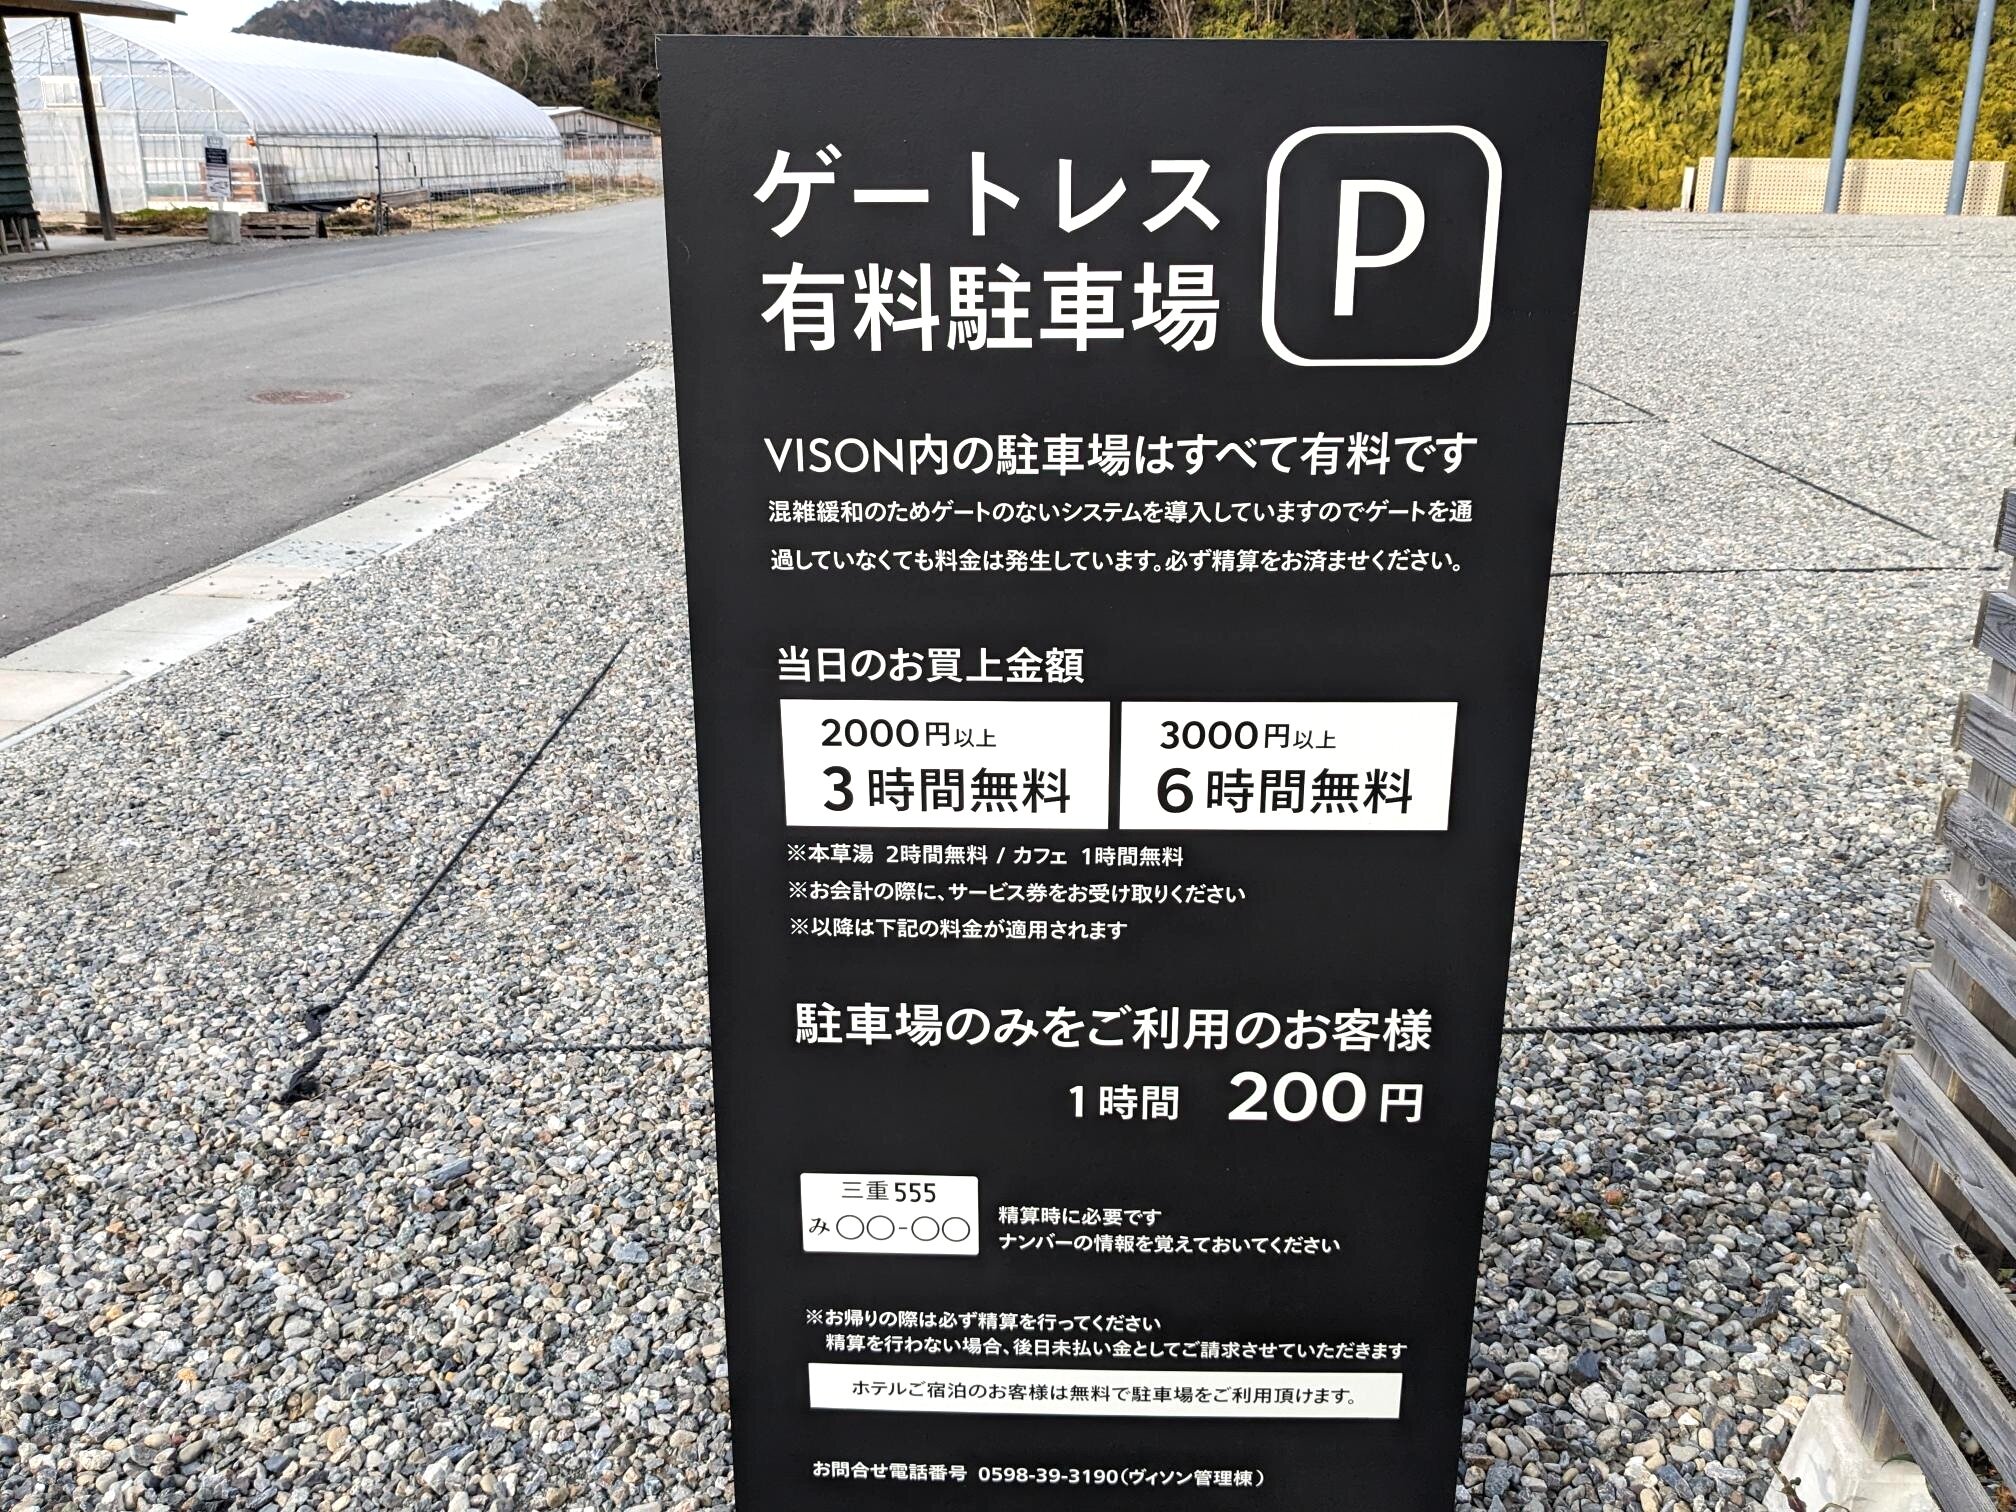 VISONの駐車場料金